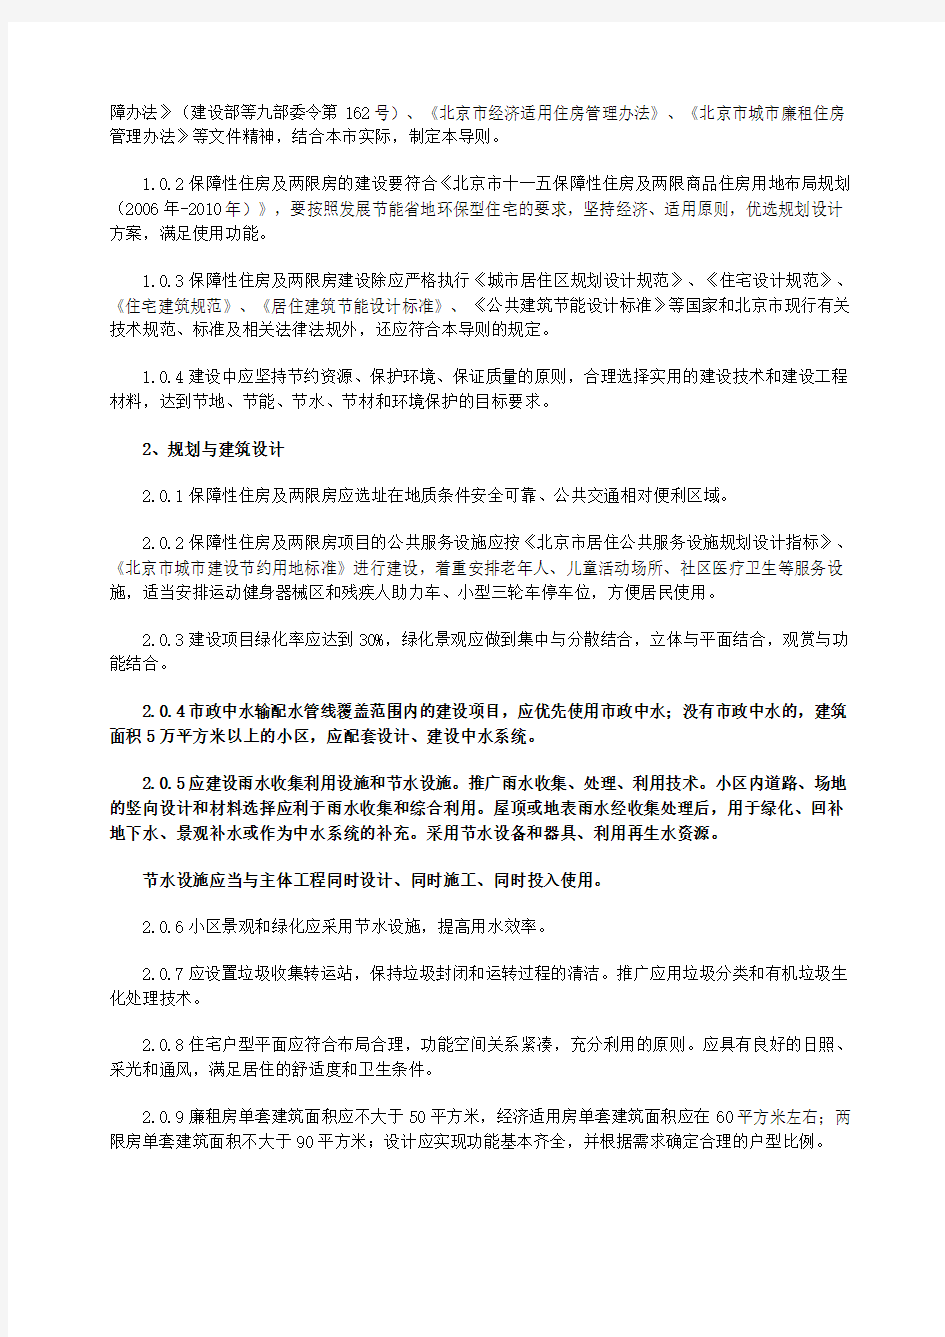 北京市廉租房、经济适用房及两限房申请条件与建设技术导则